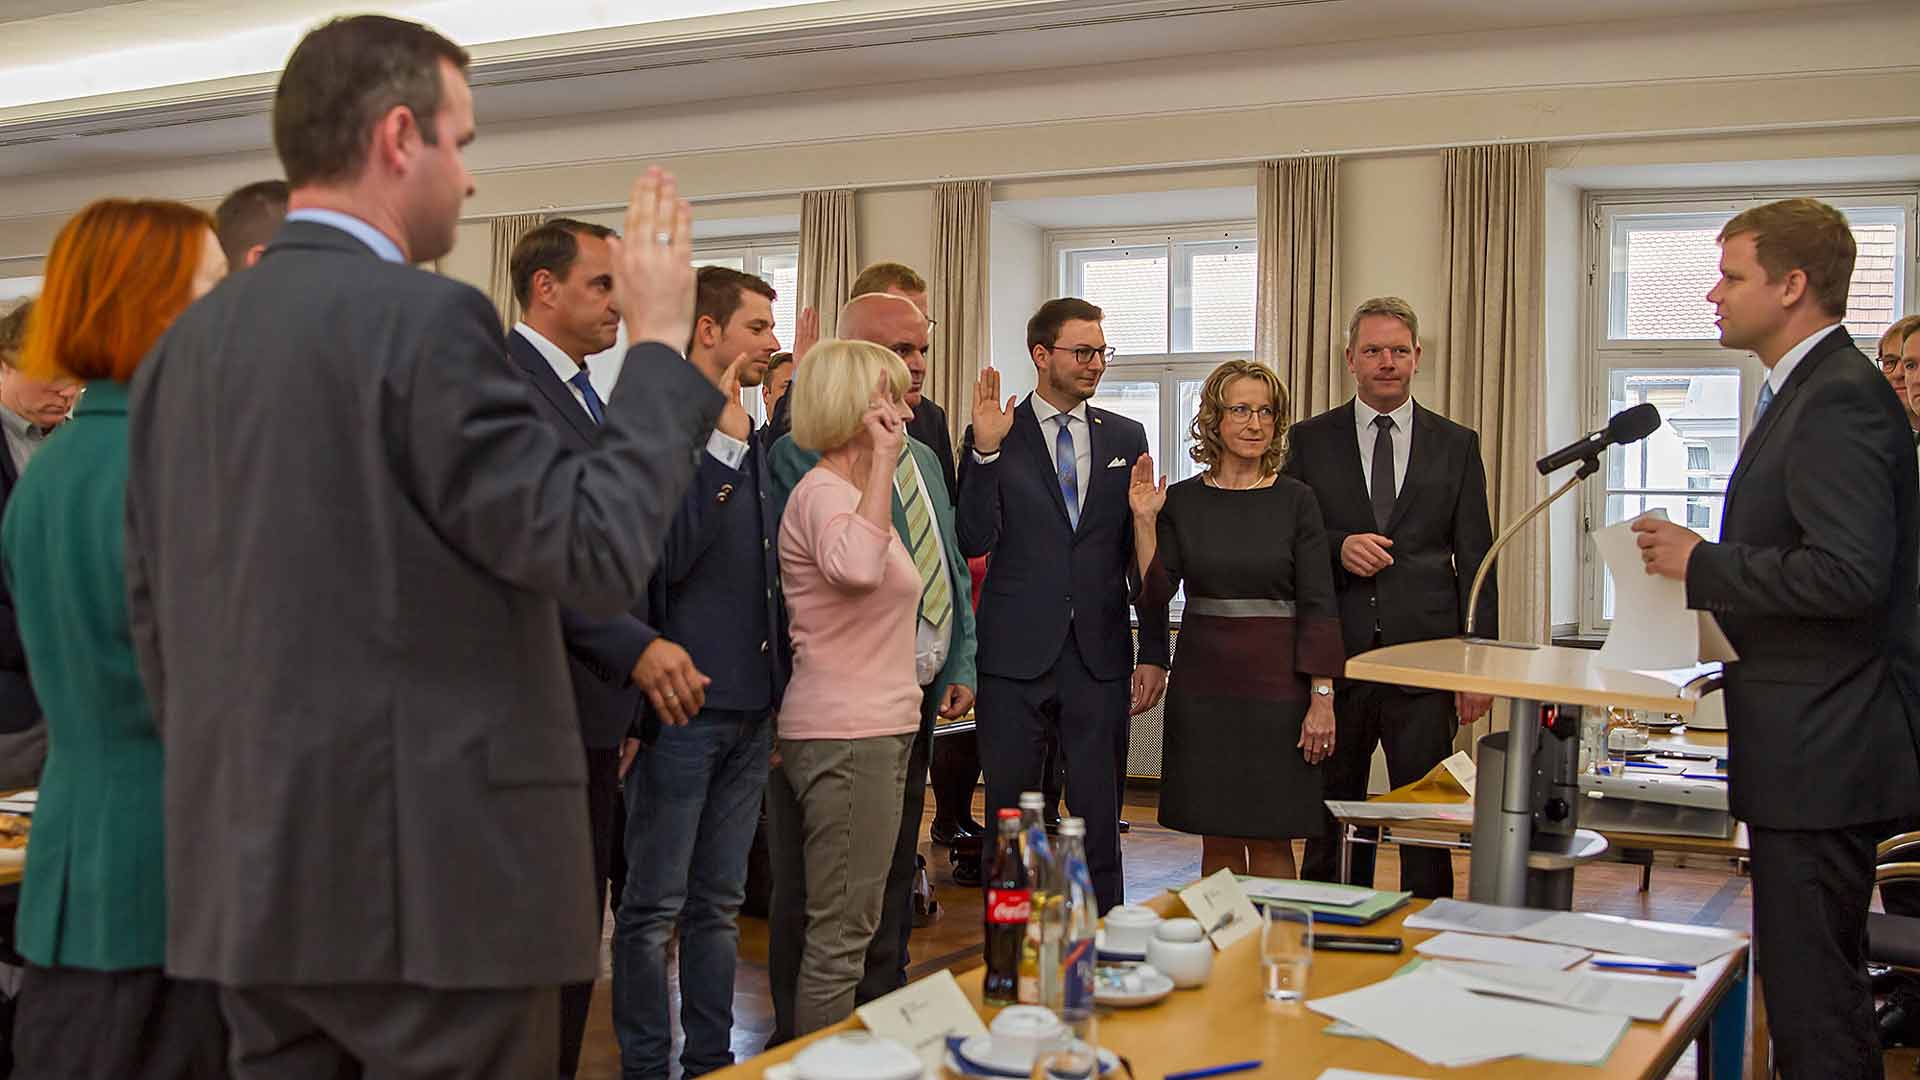 Bezirkstagspräsident Dr. Olaf Heinrich (rechts) vereidigt die neuen Mitglieder des XVI. Bezirkstags von Niederbayern: Angelika Eibl (AfD), Michael Deller (FDP), Mia Goller (Bündnis90/Die Grünen), Kai Hofmann (Die Linke), Alfred Holzner (Freie Wähler), Monika Maier (CSU), Heinz Pollak (Freie Wähler), Schregle Robert (AfD), Franz Schreyer (CSU), Fabio Sicker (AfD), Ludwig Waas (Freie Wähler) und Andreas Winterer (SPD).  (Foto: Bezirk Niederbayern, Bäter)